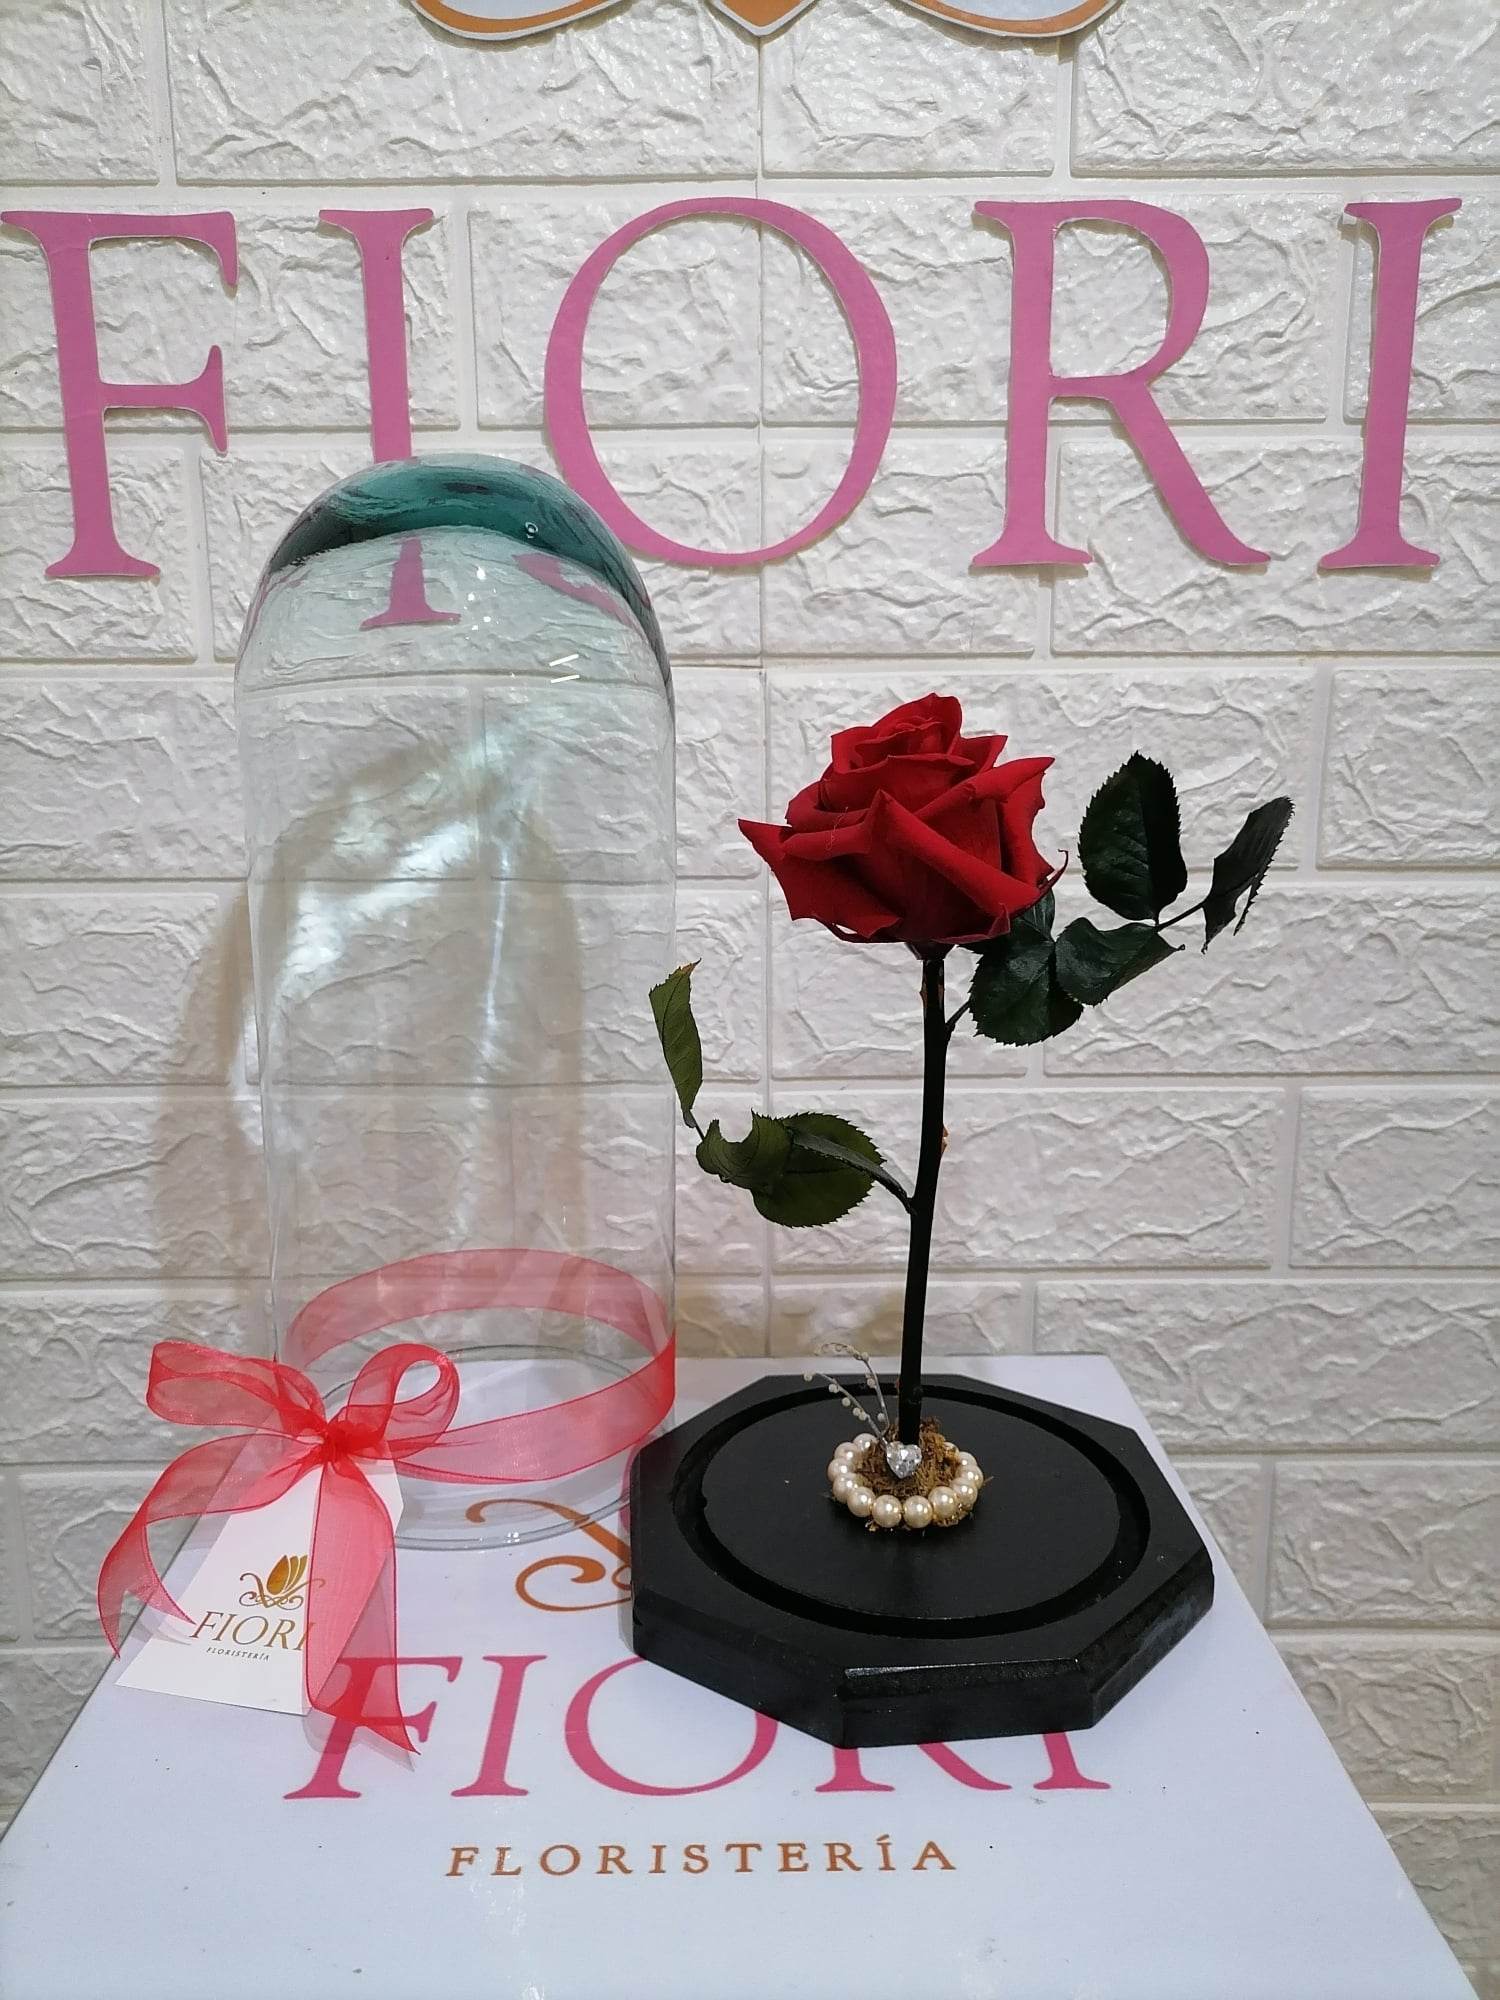 Rosa eterna - Decorali tu floreria consentida EdoMex y CDMX